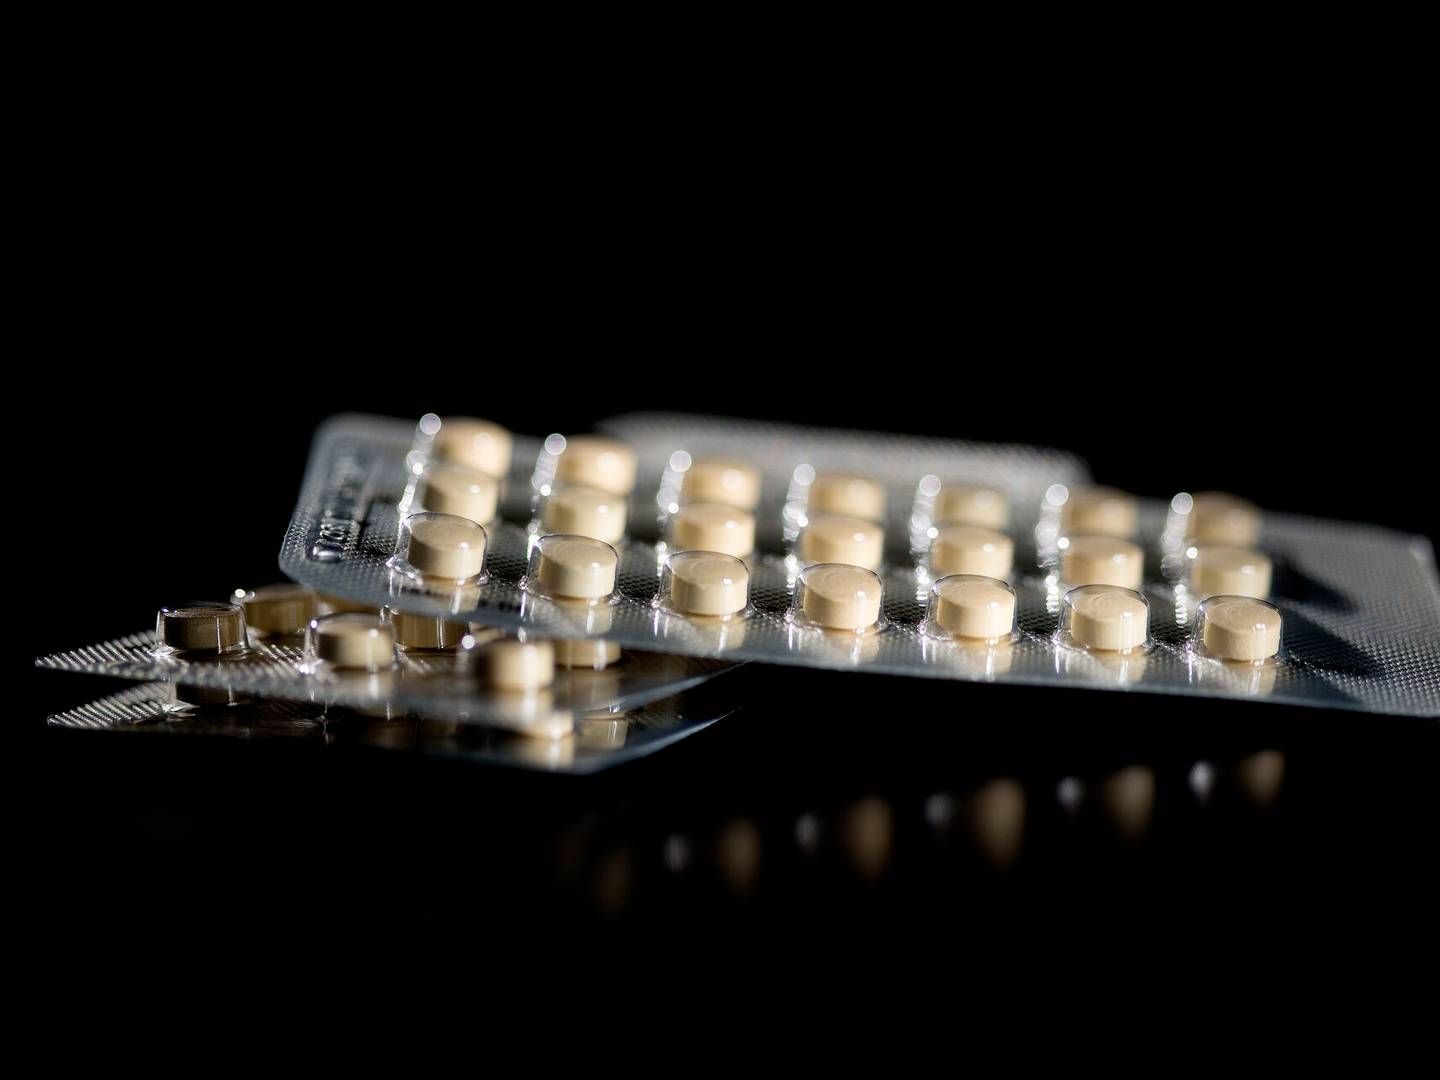 Studiet skal undersøge hormonel prævention som p-piller, p-plaster og hormonspiral. | Photo: Peter Hove Olesen/politiken/ritzau Scanpix